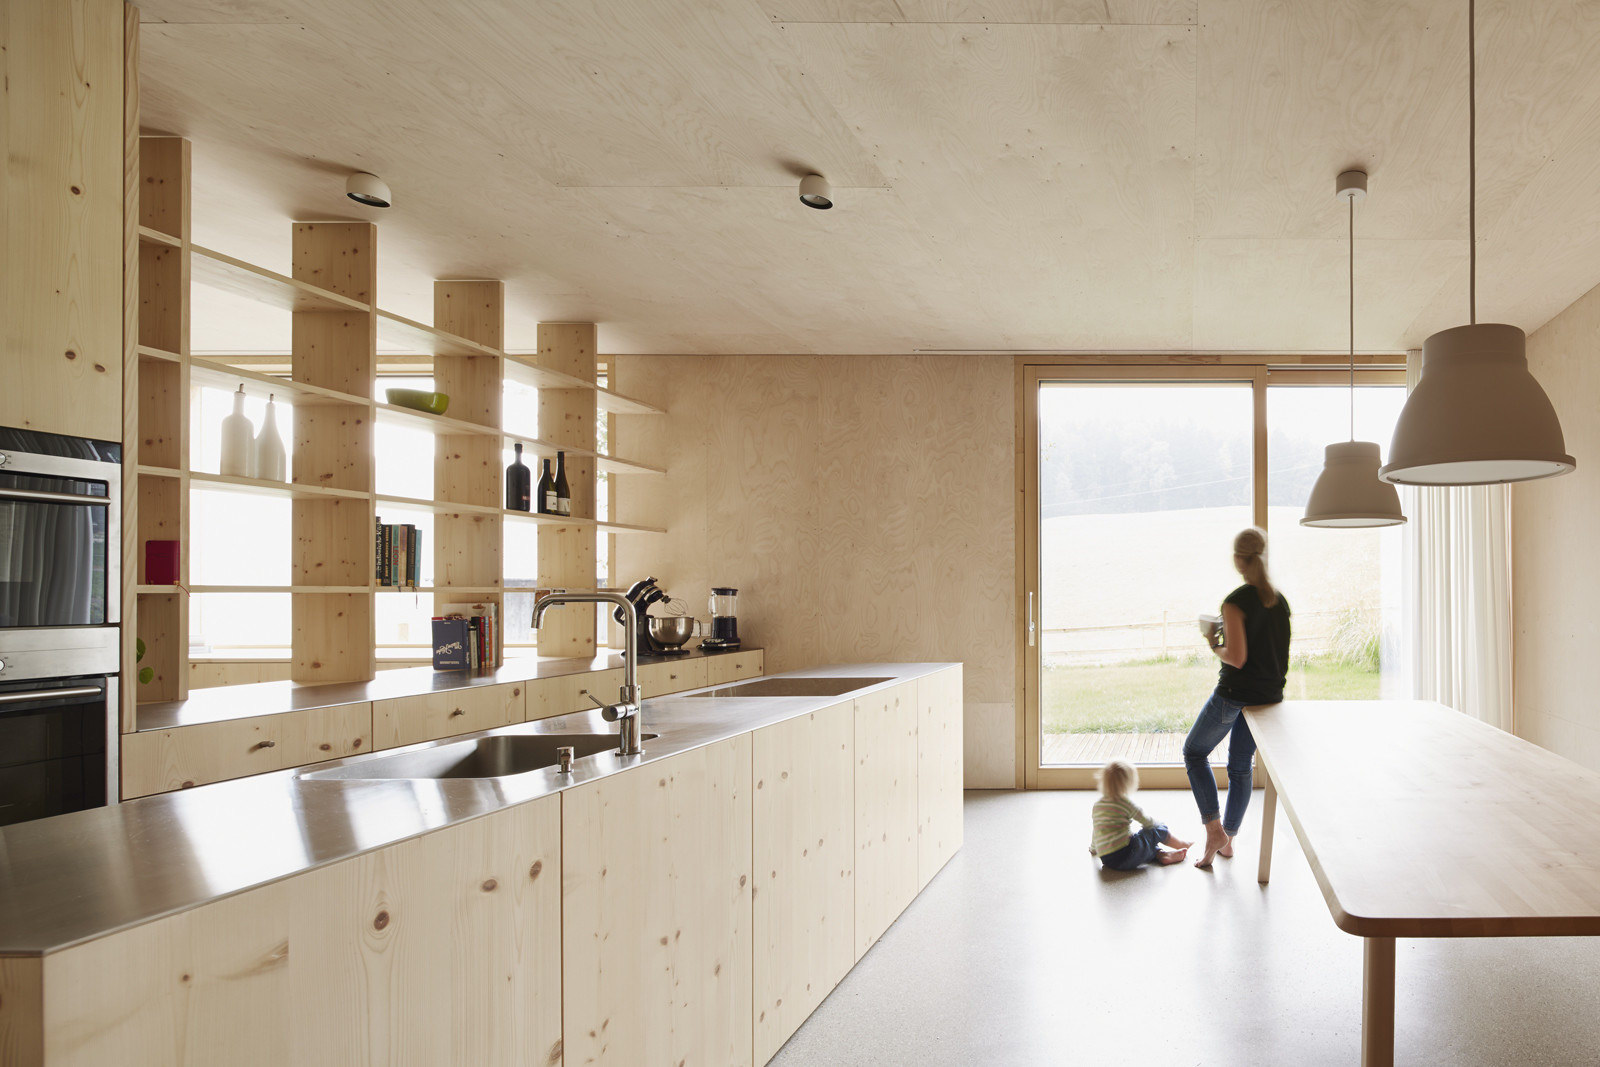 Feurstein House by Innauer‐Matt Architekten